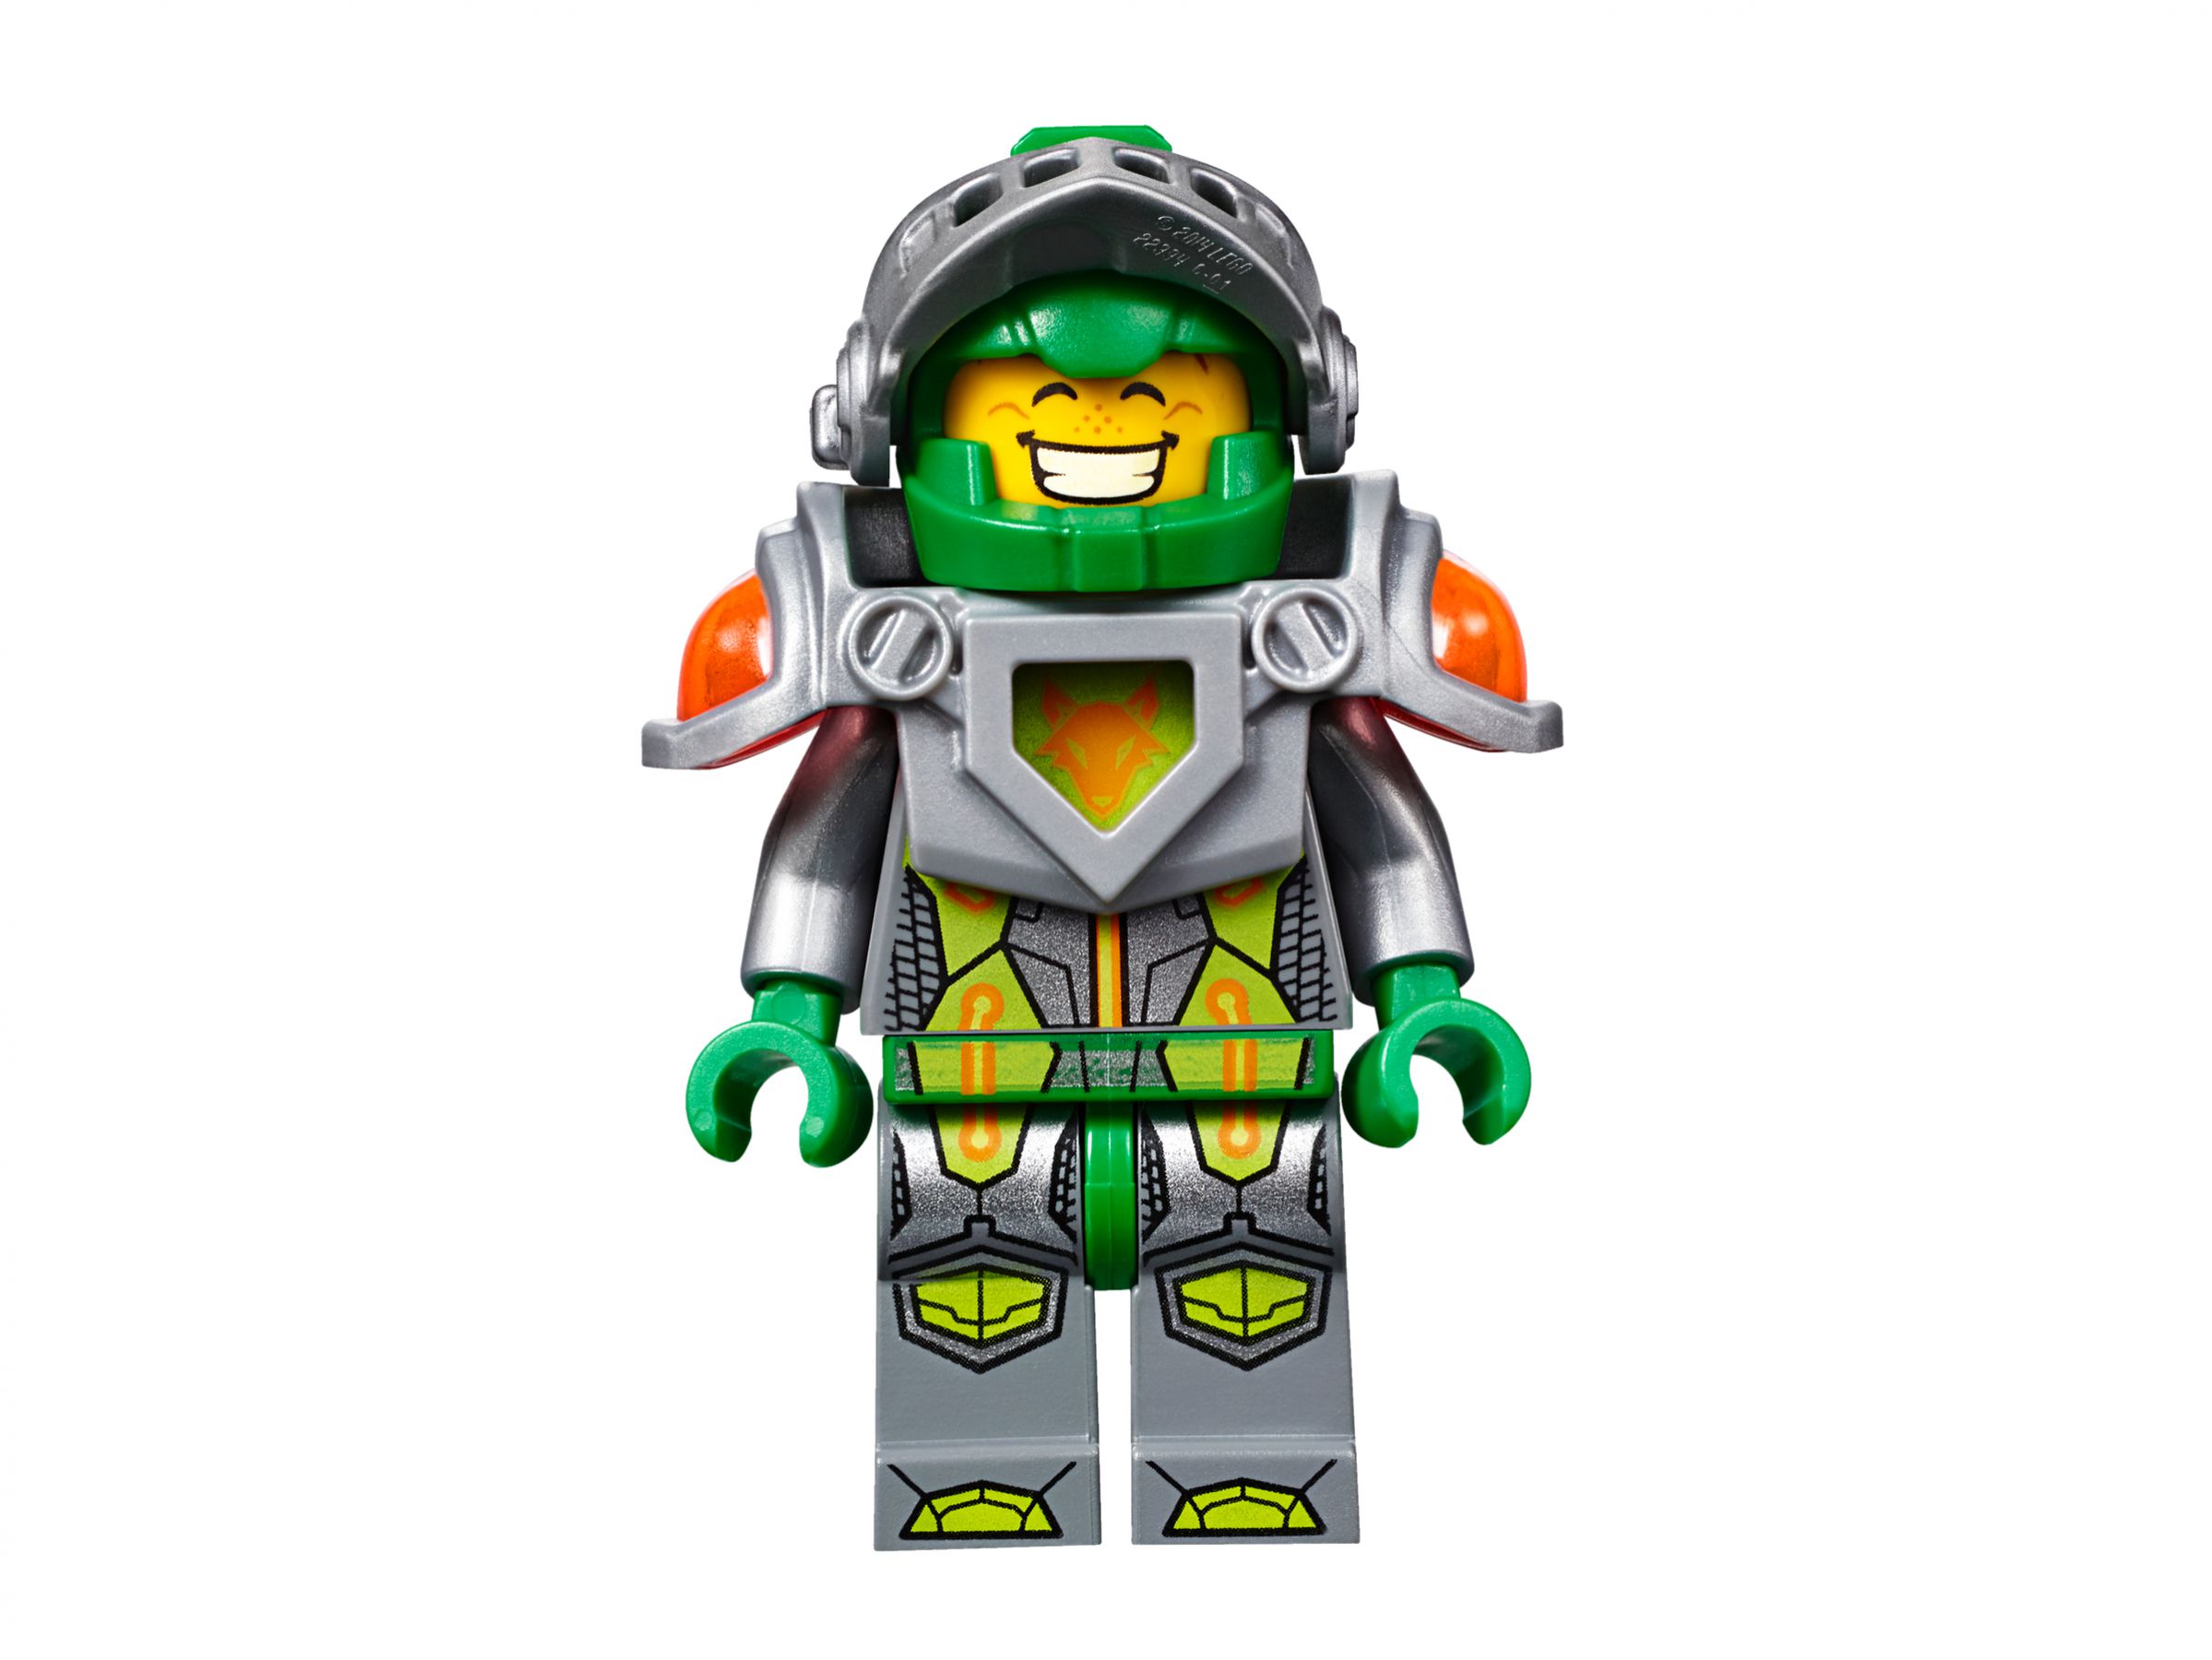 LEGO Nexo Knights 70317 Fortrex – Die rollende Festung LEGO_70317_alt15.jpg